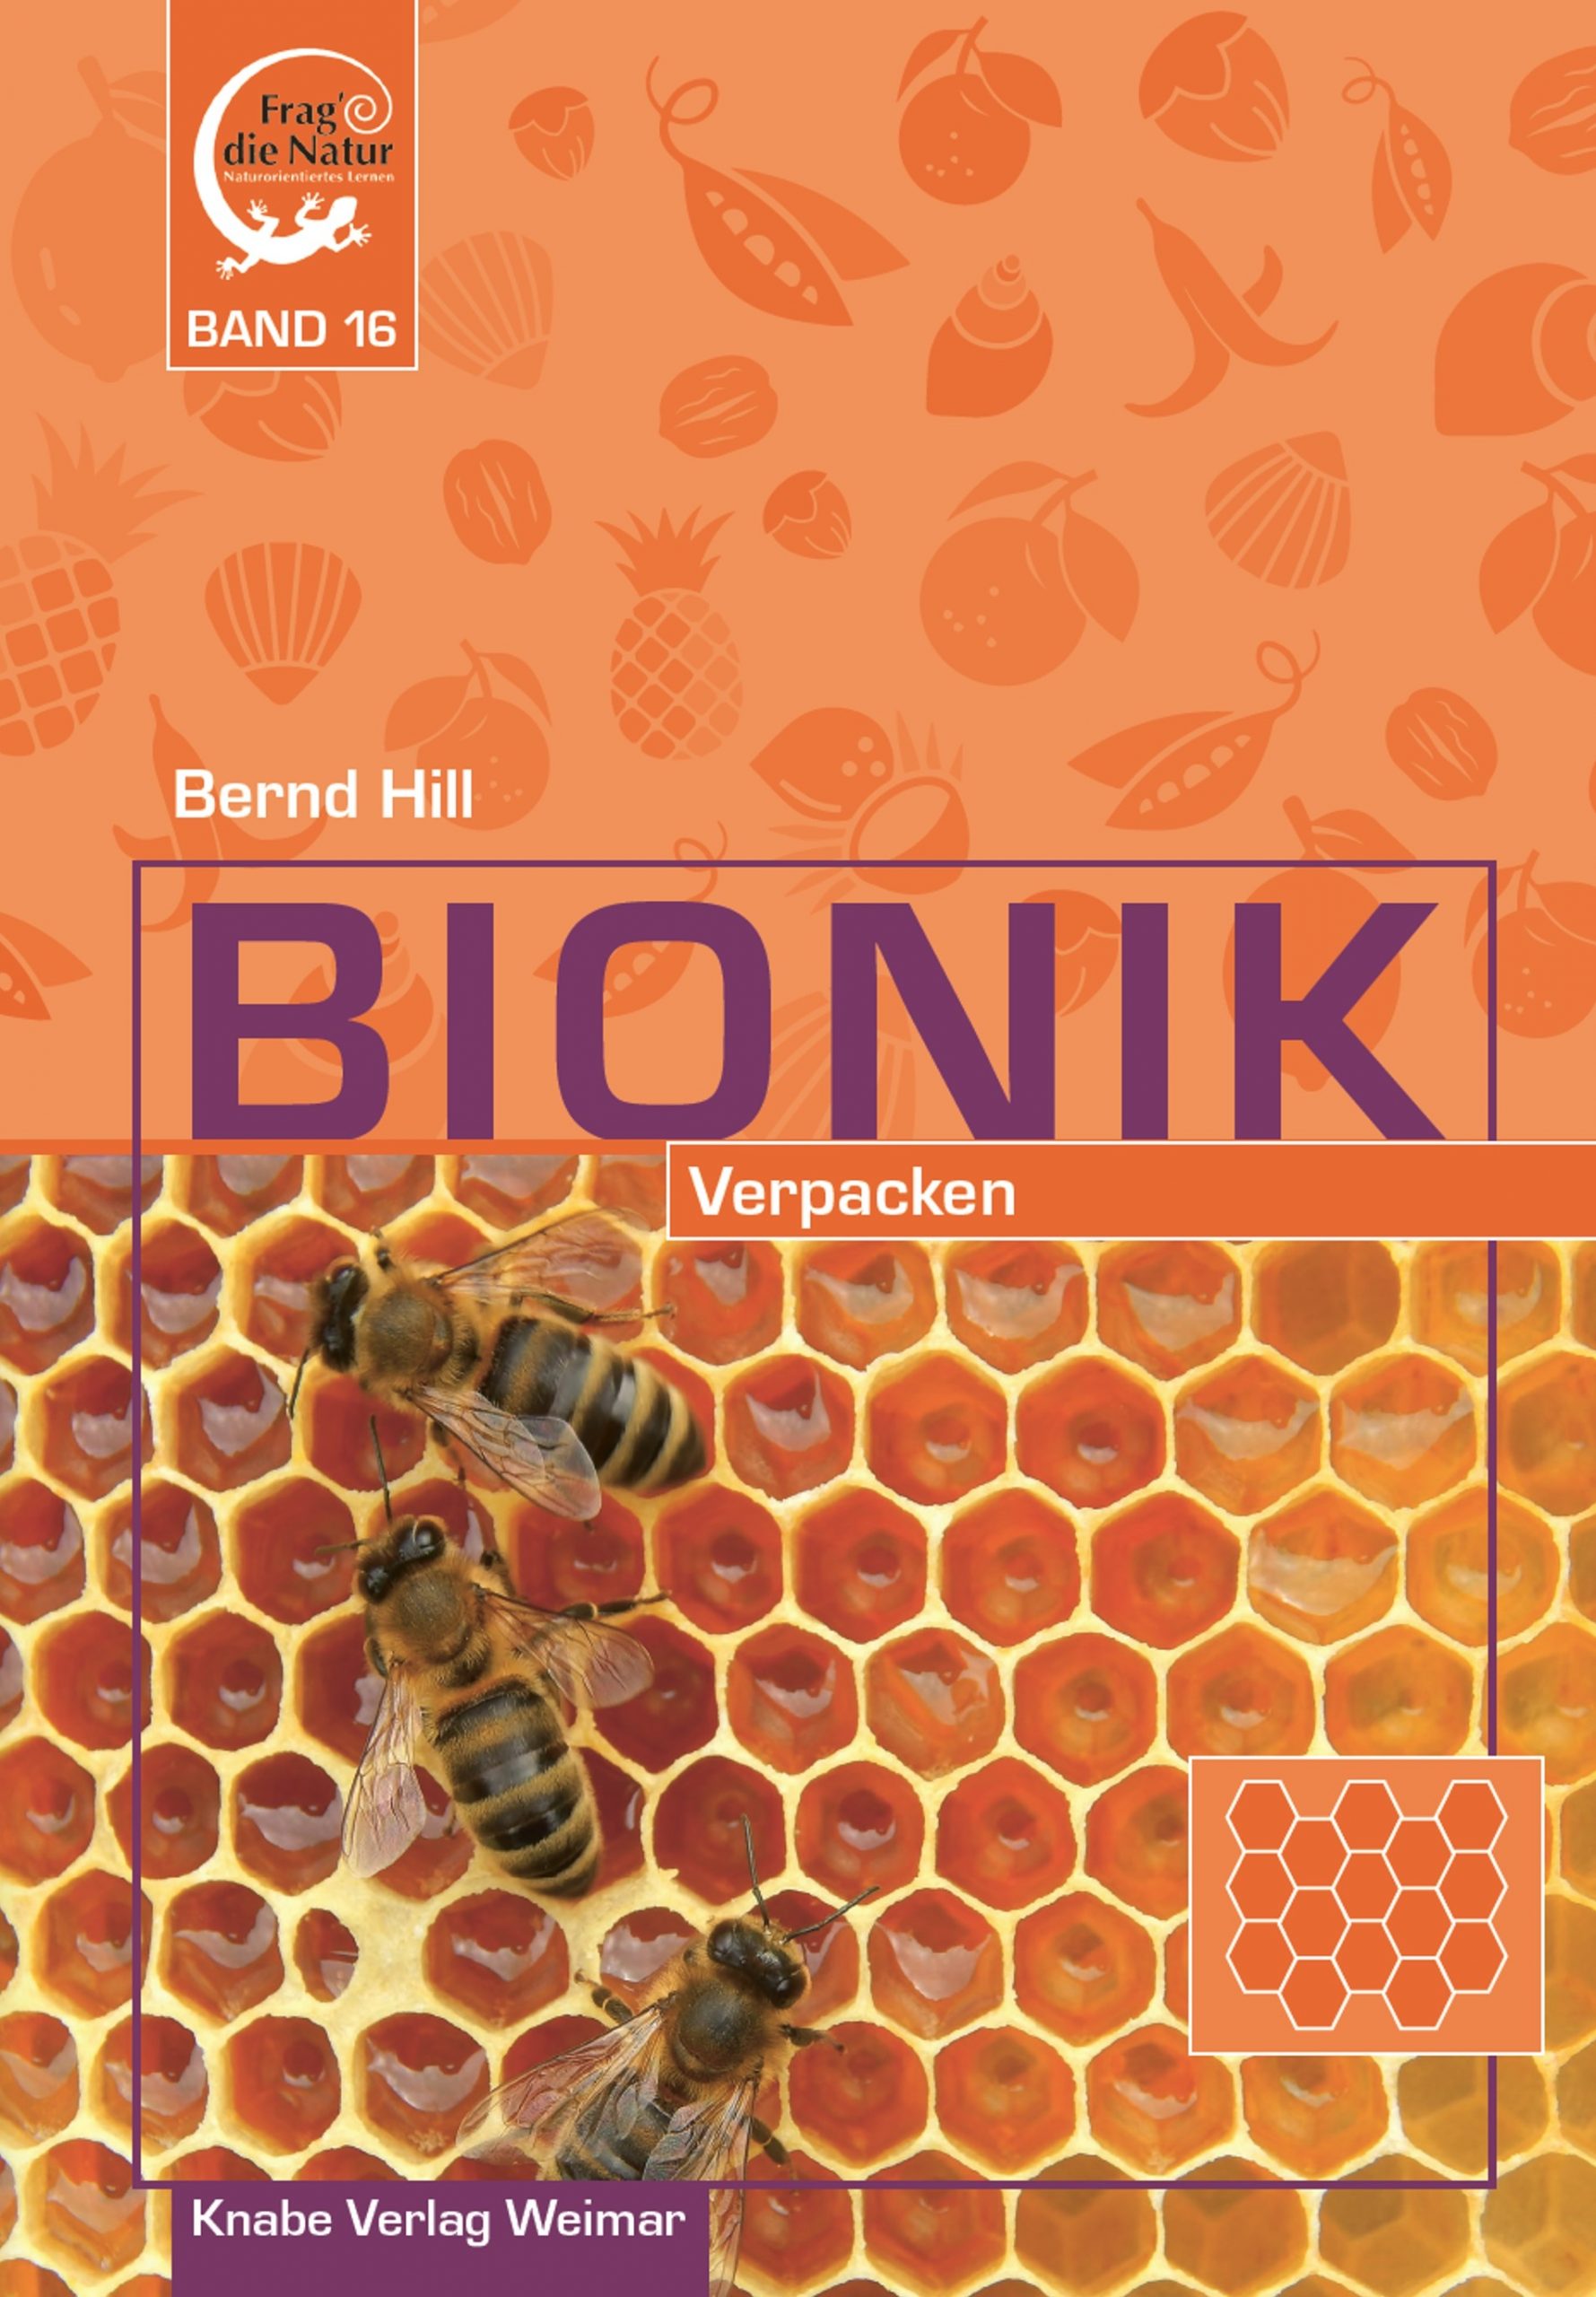 Bionik XVI. Verpacken